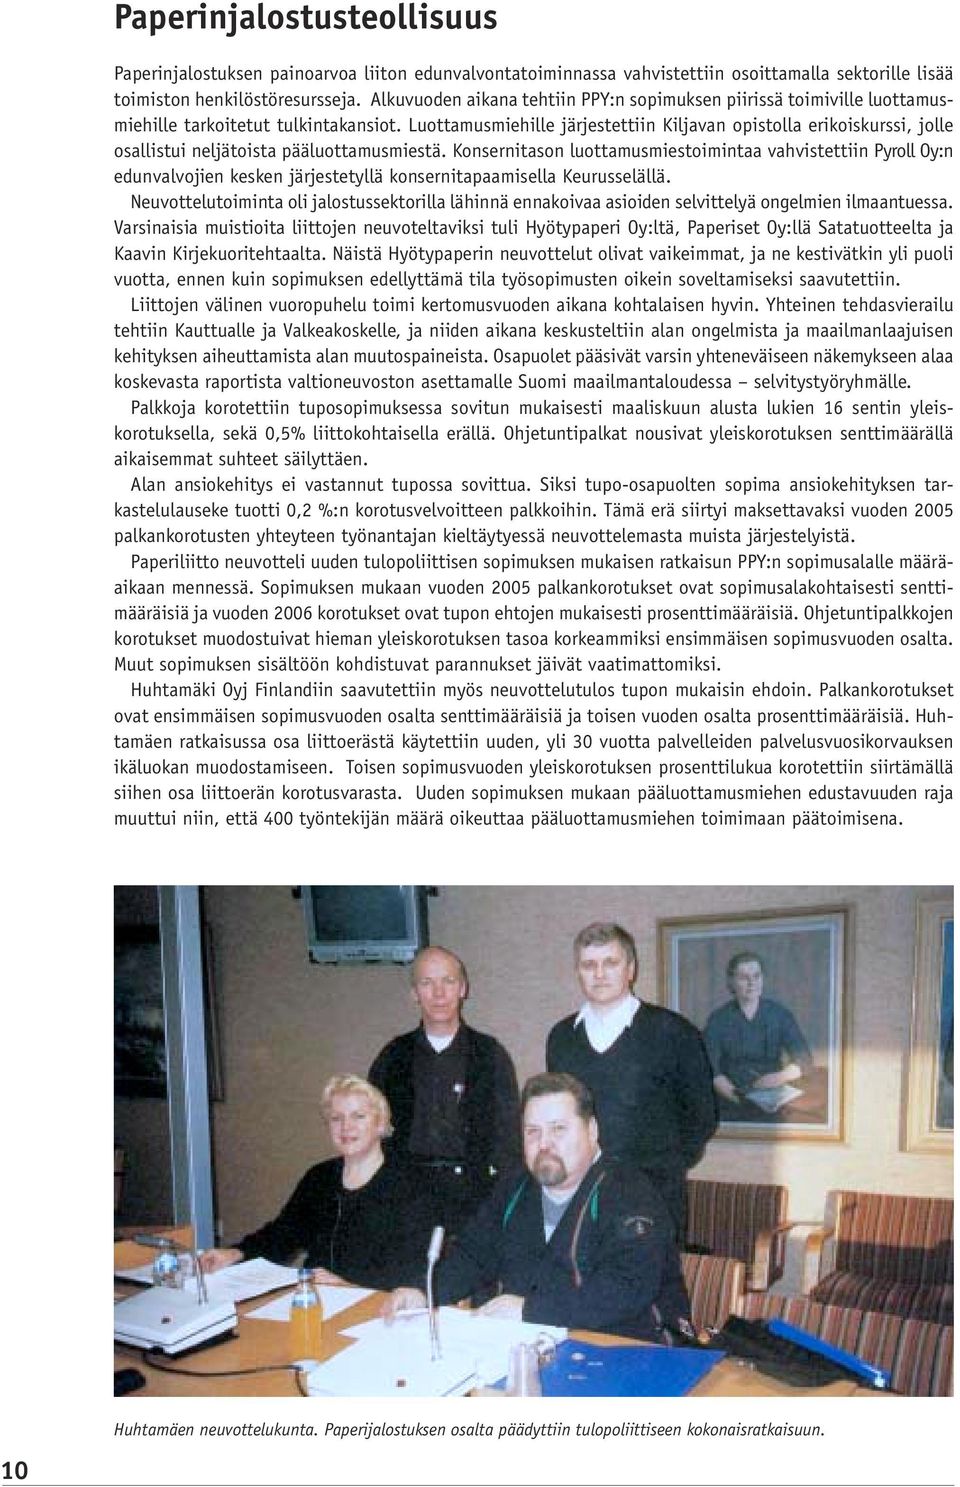 Luottamusmiehille järjestettiin Kiljavan opistolla erikoiskurssi, jolle osallistui neljätoista pääluottamusmiestä.